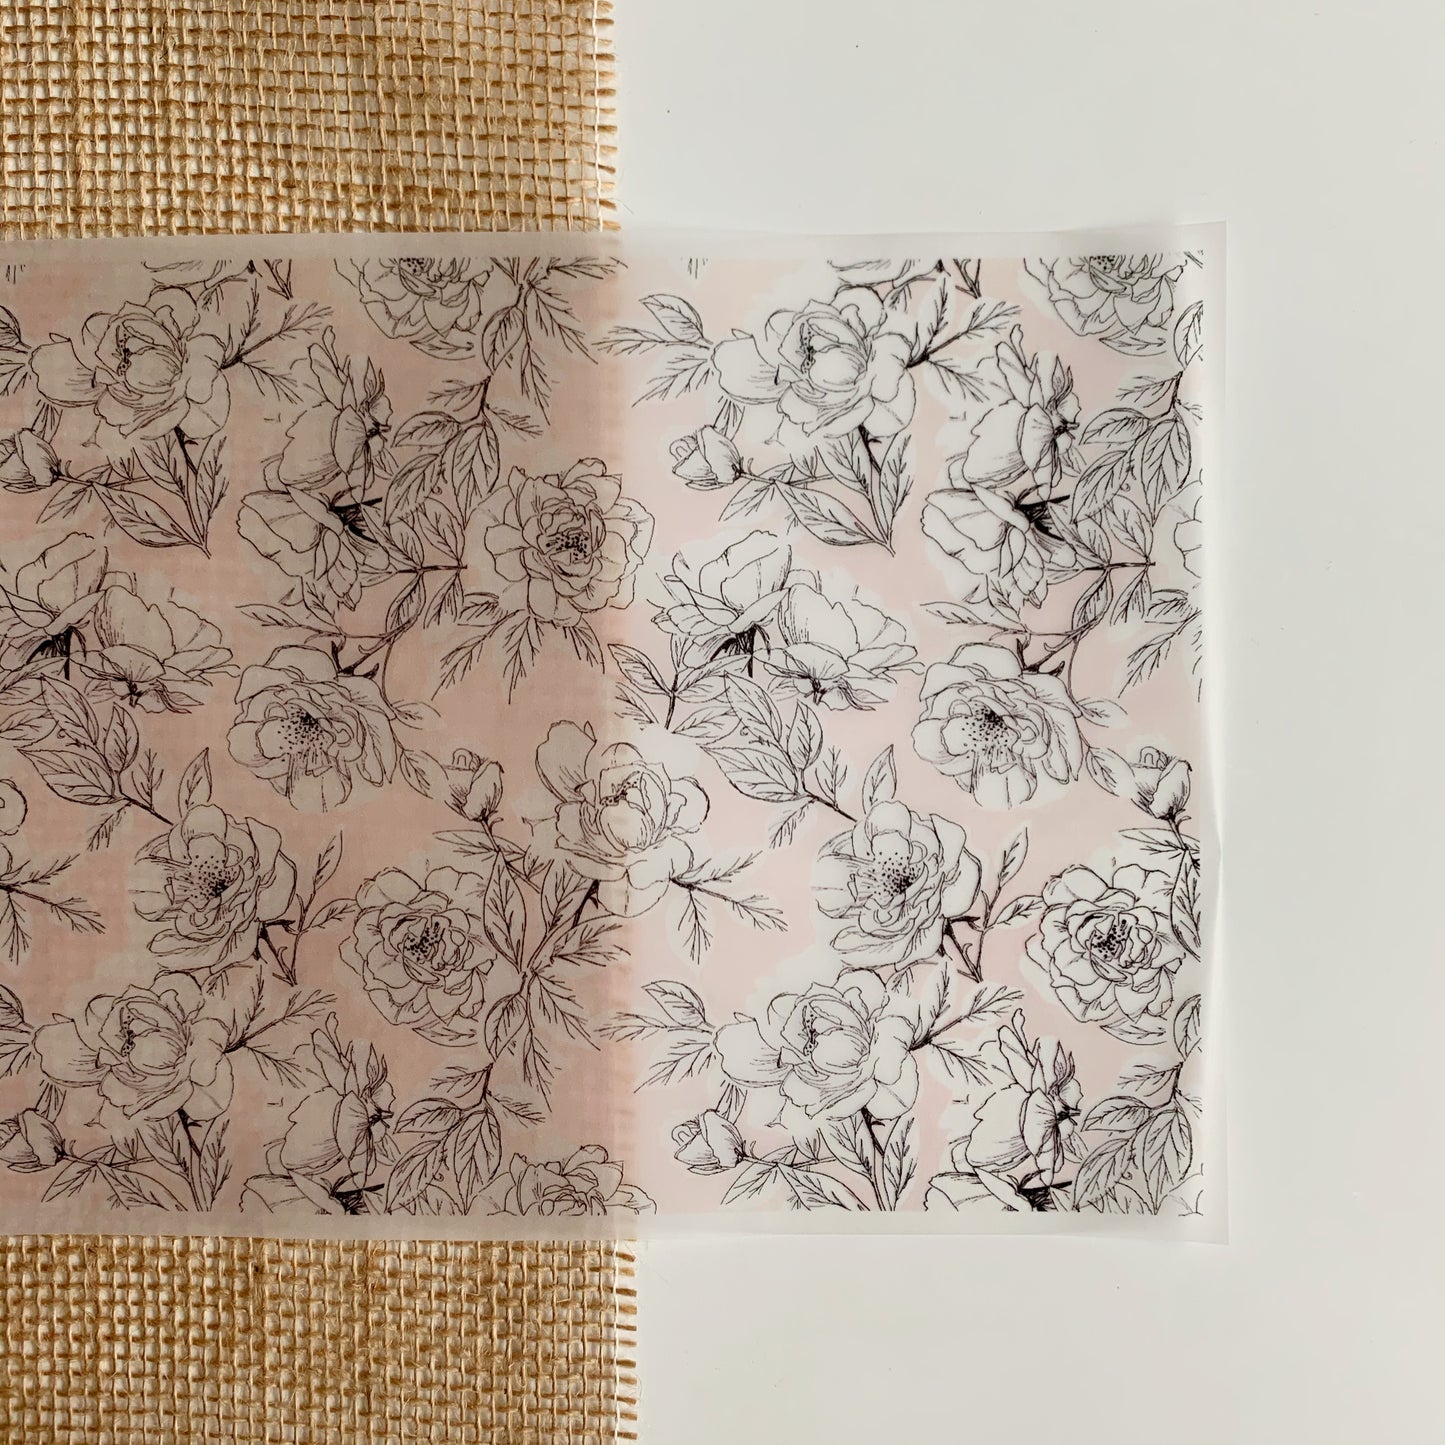 CV014 Wild Roses Soft Blush farbiges Pergament-A4-Blatt